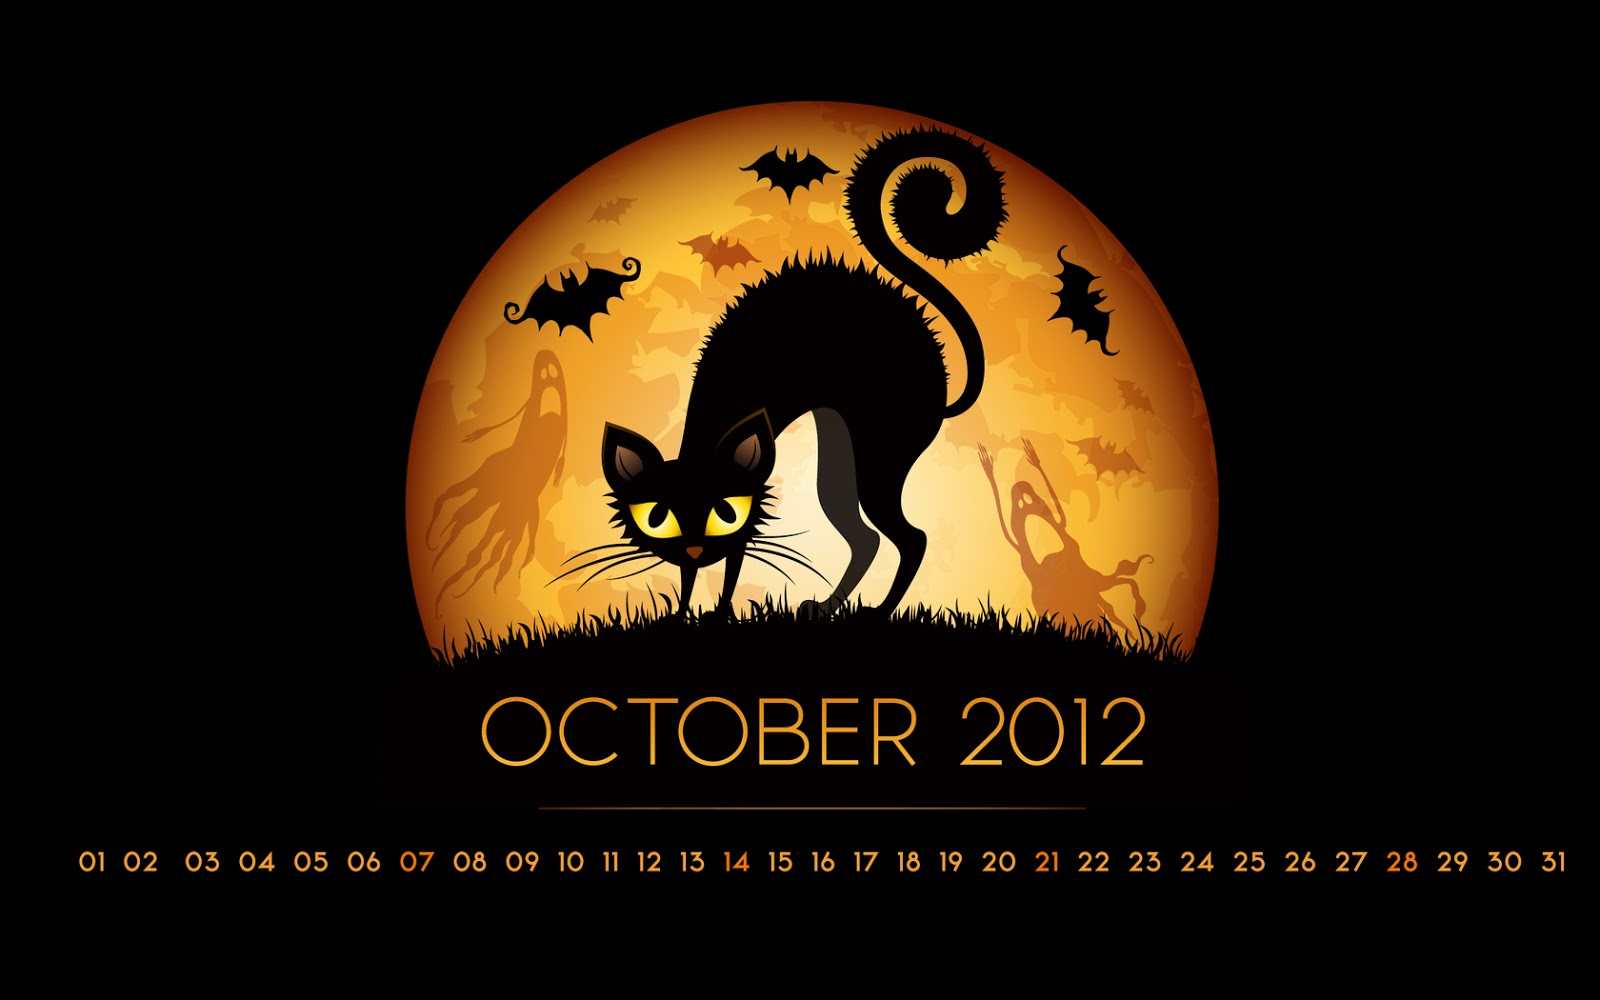 http://4.bp.blogspot.com/-XdwwOV4CP1U/UHz65jy5thI/AAAAAAAAHdQ/yu7TyA8dEWE/s1600/Halloween+Computer+Wallpaper+001.jpg